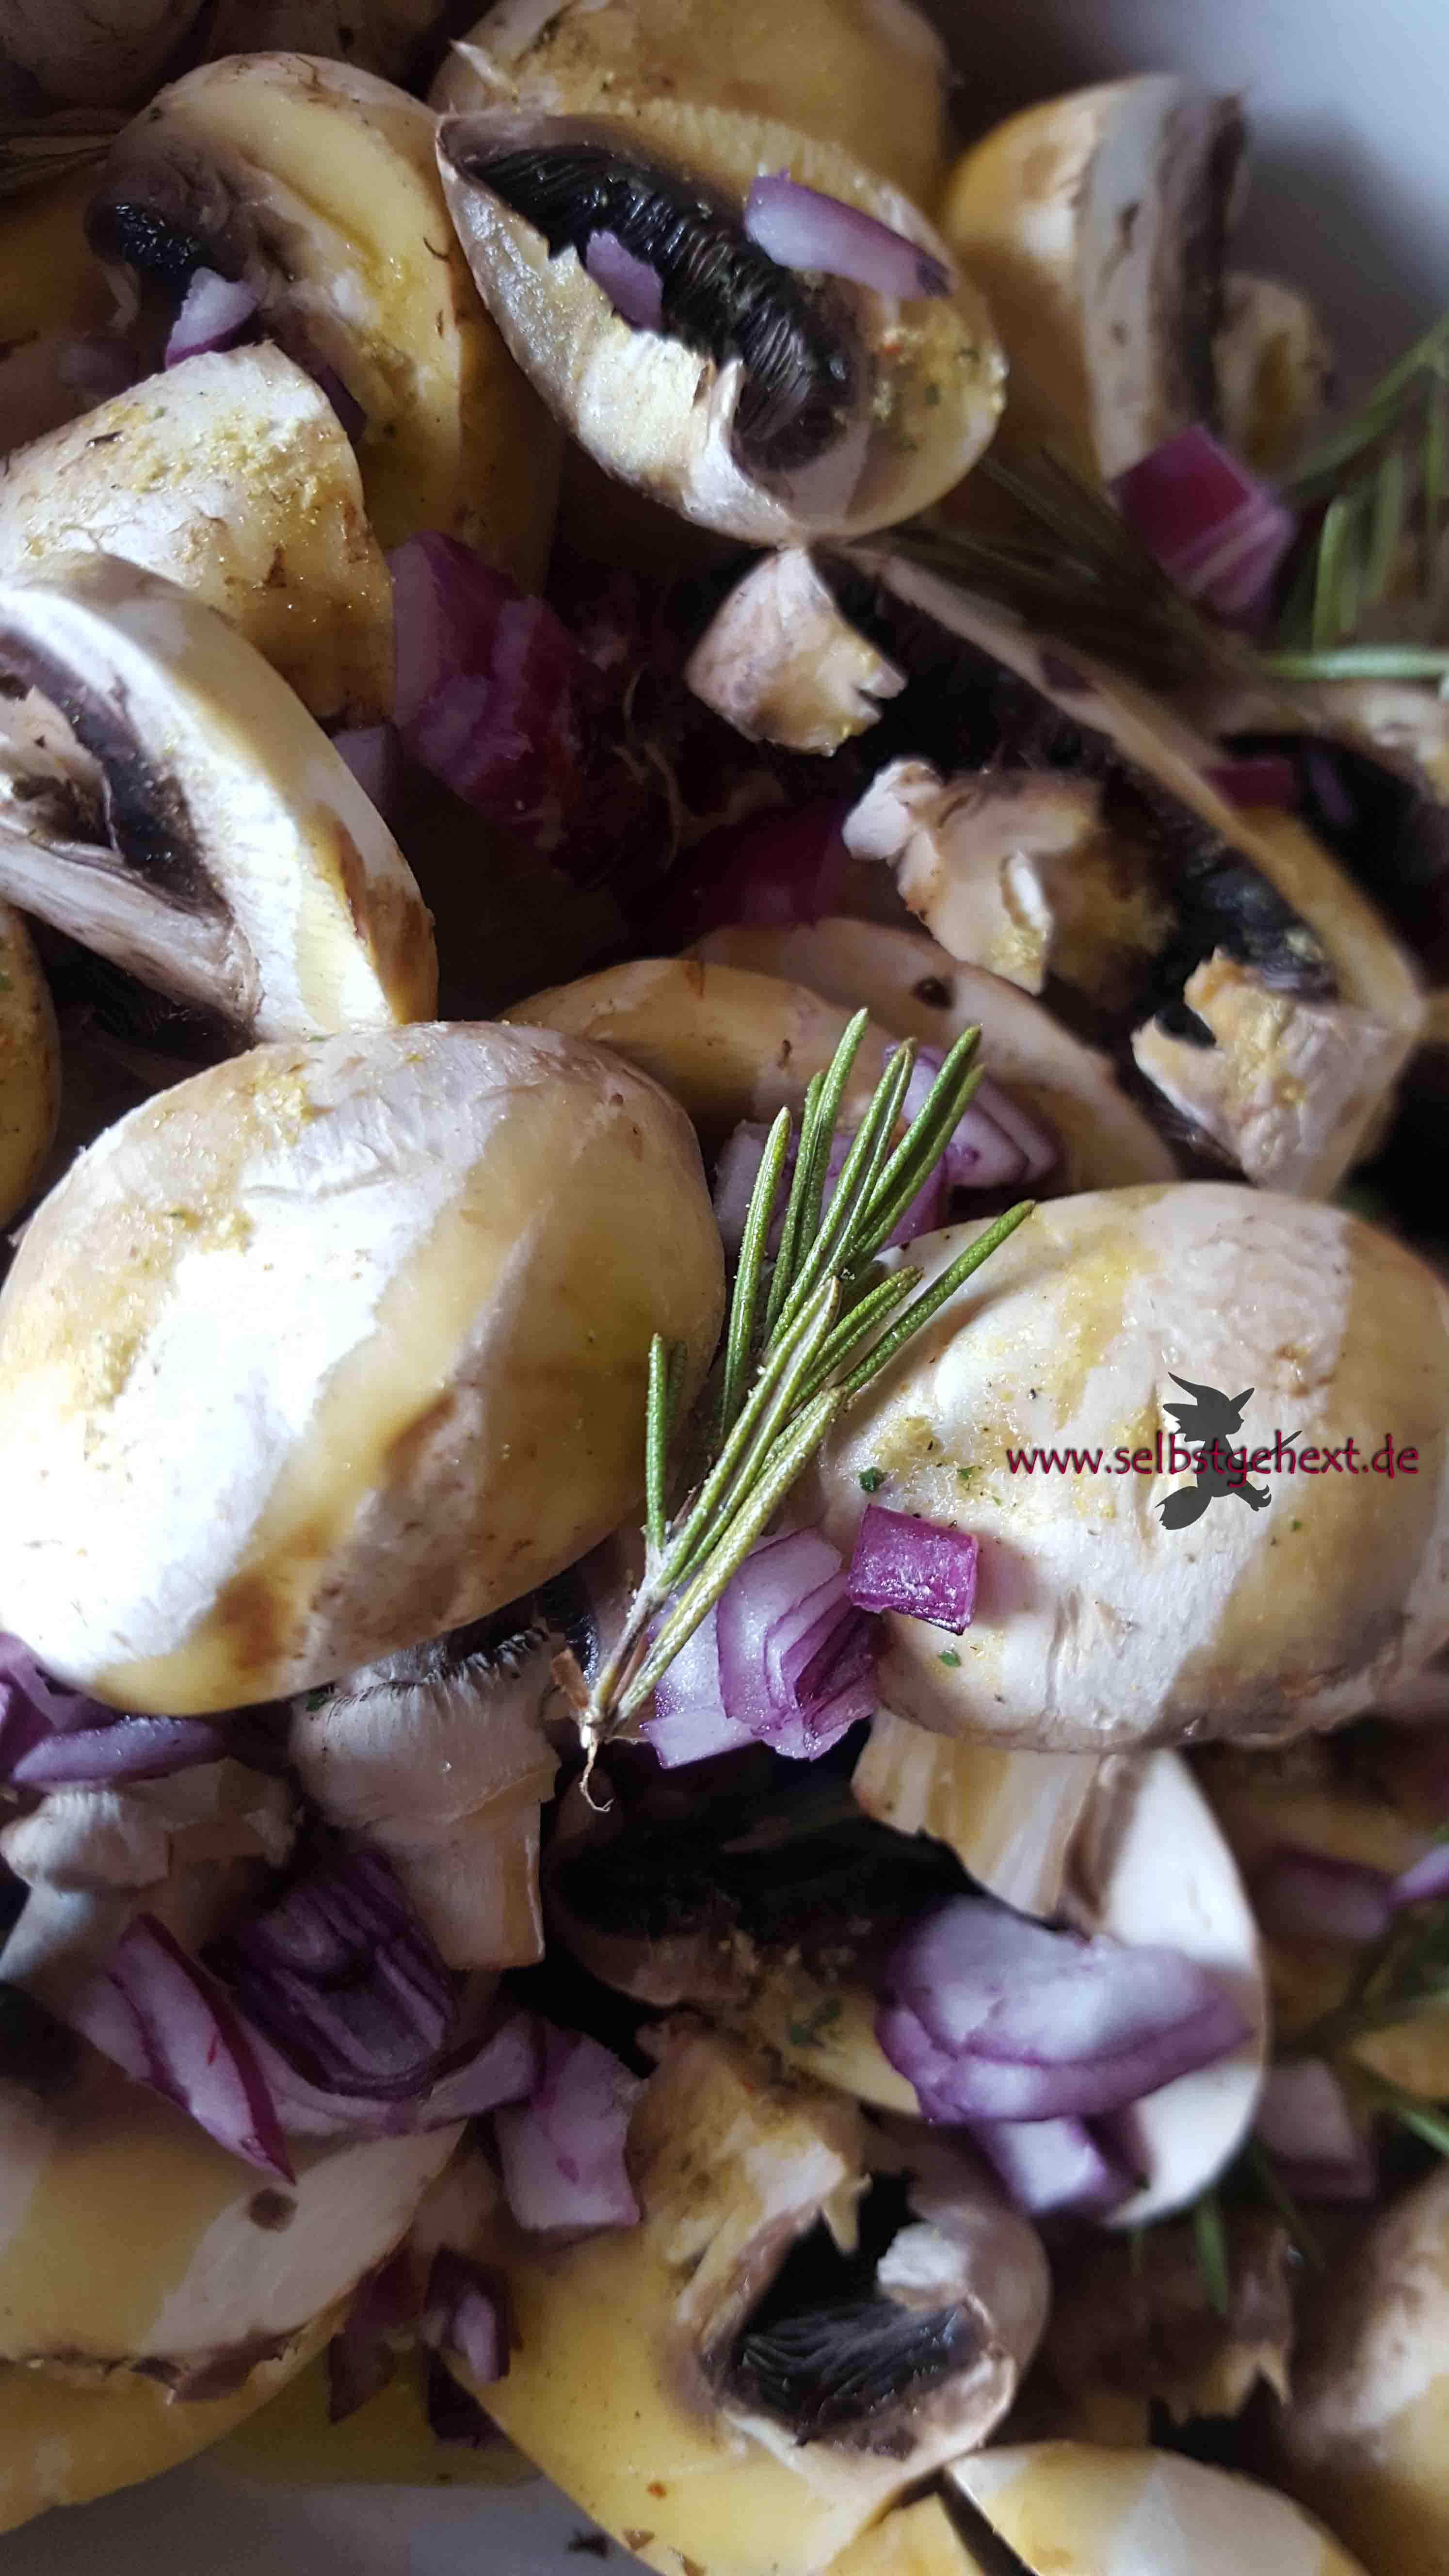 Was koche ich heute? Zwiebel-Pilz-Pastete! | Einfach selbstgehext!